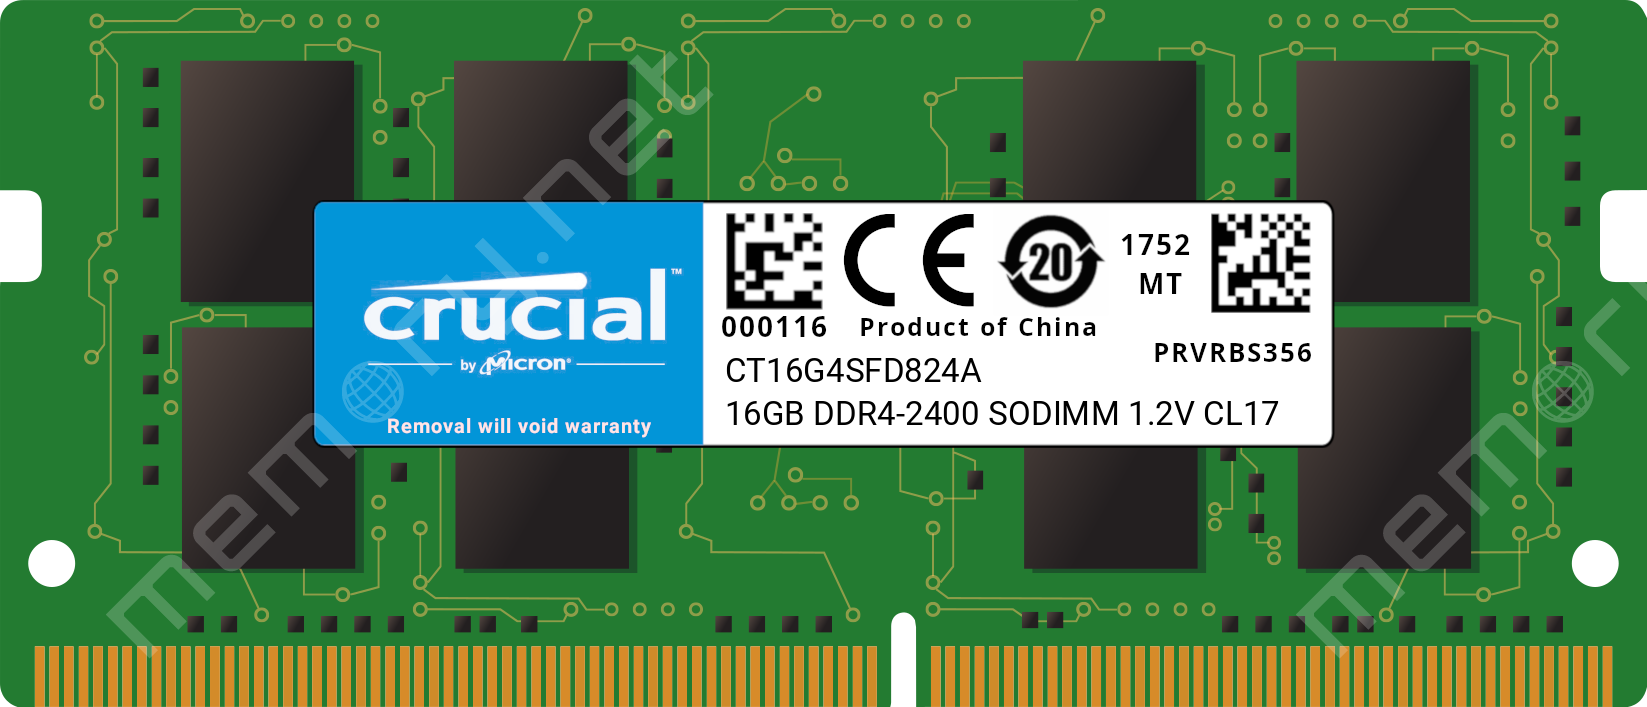 Ønske platform barmhjertighed CT16G4SFD824A - Crucial 1x 16GB DDR4-2400 SODIMM PC4-19200T-S Dual Rank x8  Module